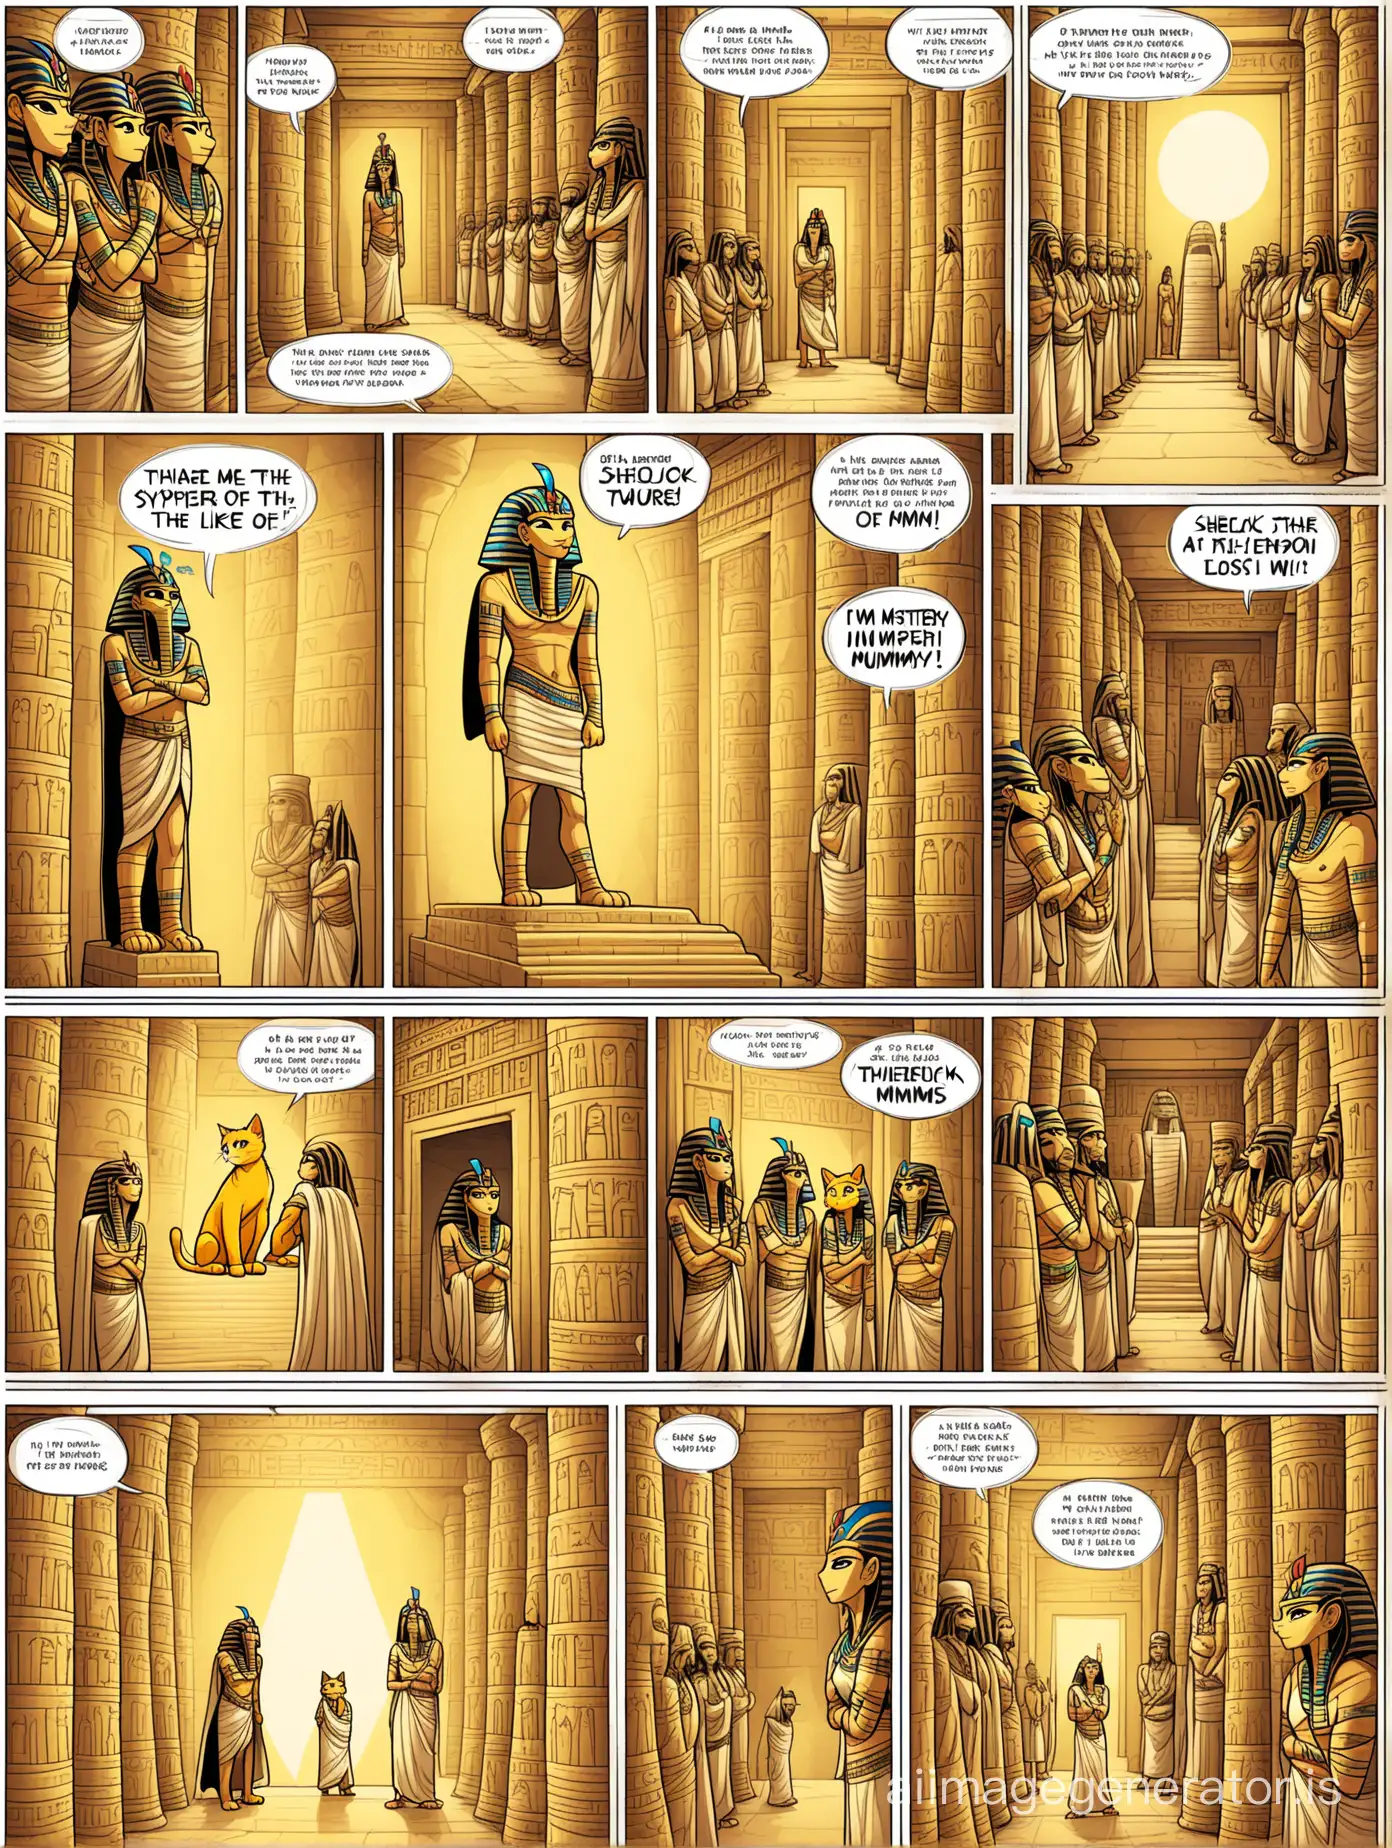 Этот комиксов, плохая раскраска. Желтый кот, как человек в плаще с шапкой Шерлок Холмса в египетском храме. Вокруг египетские боги и мумии. . Тайна потерянной мумии